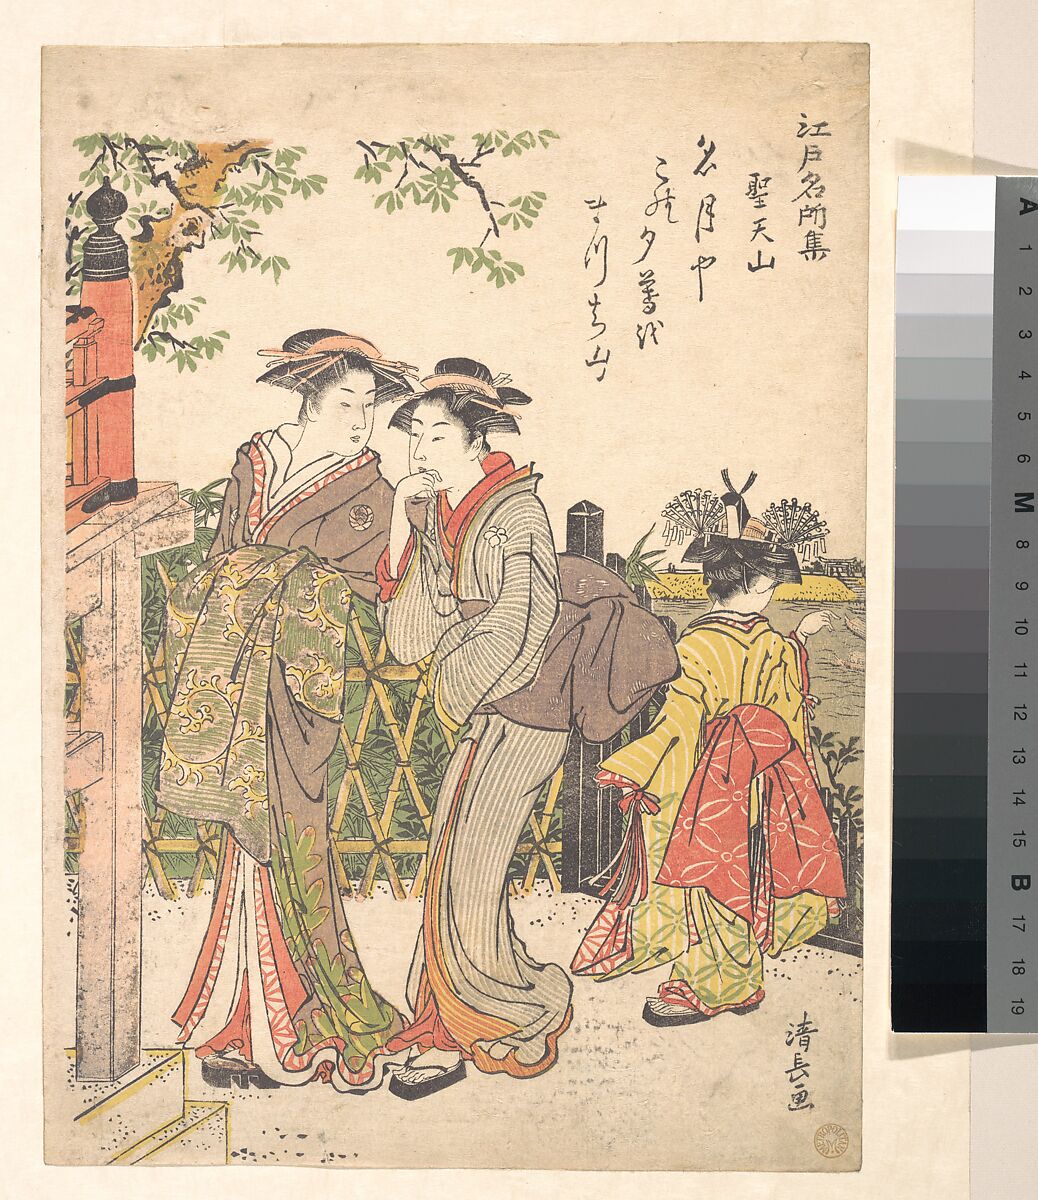 Shōtenyama, Torii Kiyonaga (Japanese, 1752–1815), Woodblock print; ink and color on paper, Japan 